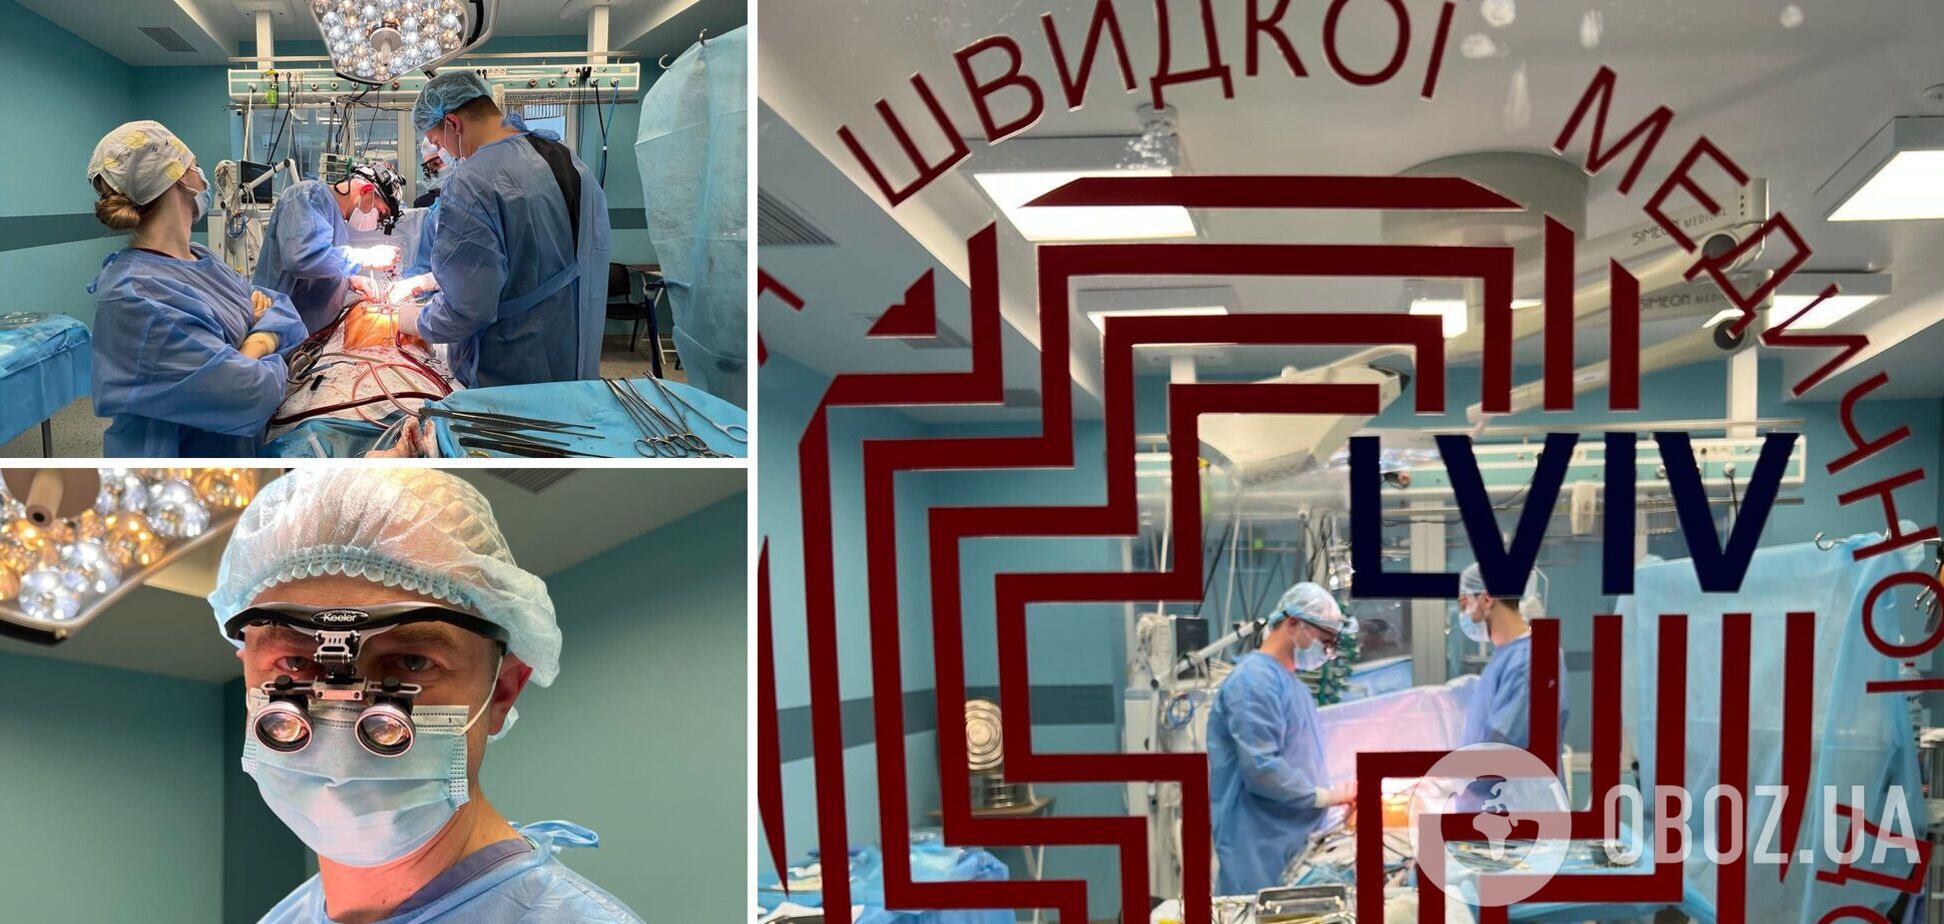 Трансплантологи во Львове спасли несколько жизней благодаря донорским органам